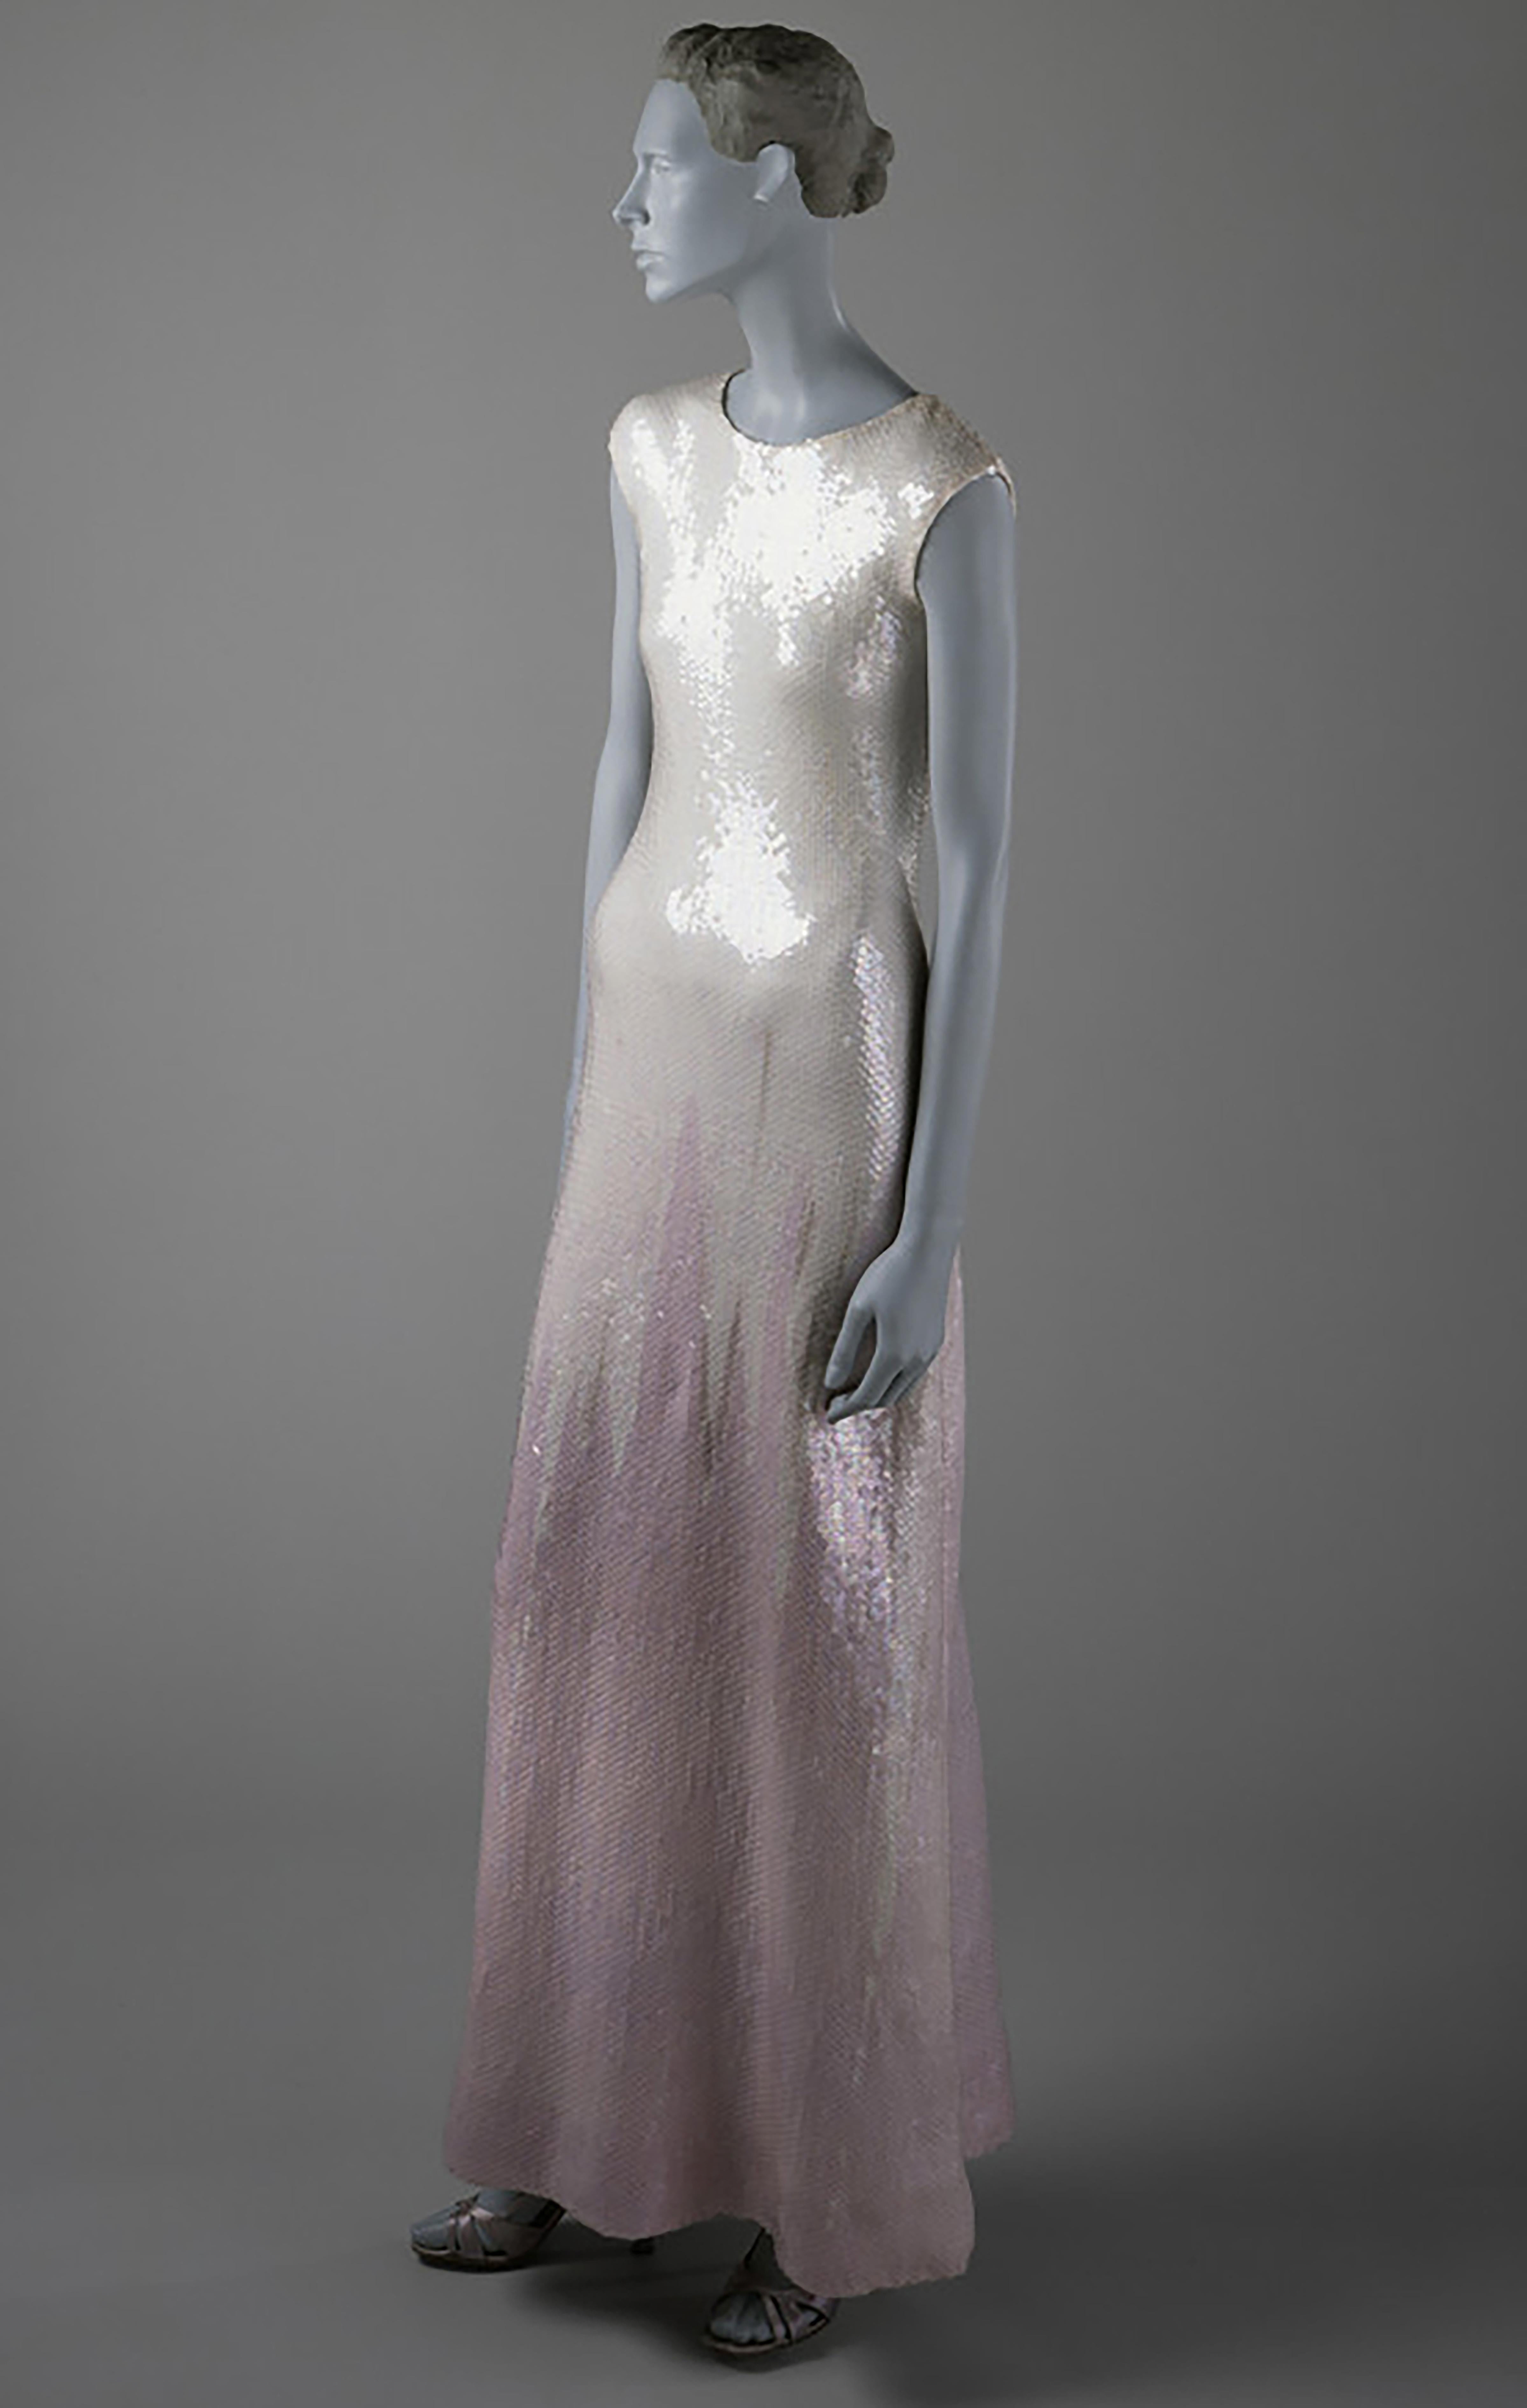 A/W 1973 Halston Oil Slick ärmelloses Kleid mit geometrischer Spitze und Paillettenverlauf. Ärmelloses Kleid mit Rundhalsausschnitt und extrem seltenem, durchgehendem, subtil schillerndem Paillettenbesatz. Gelbgrünes Oberteil mit hellviolettem